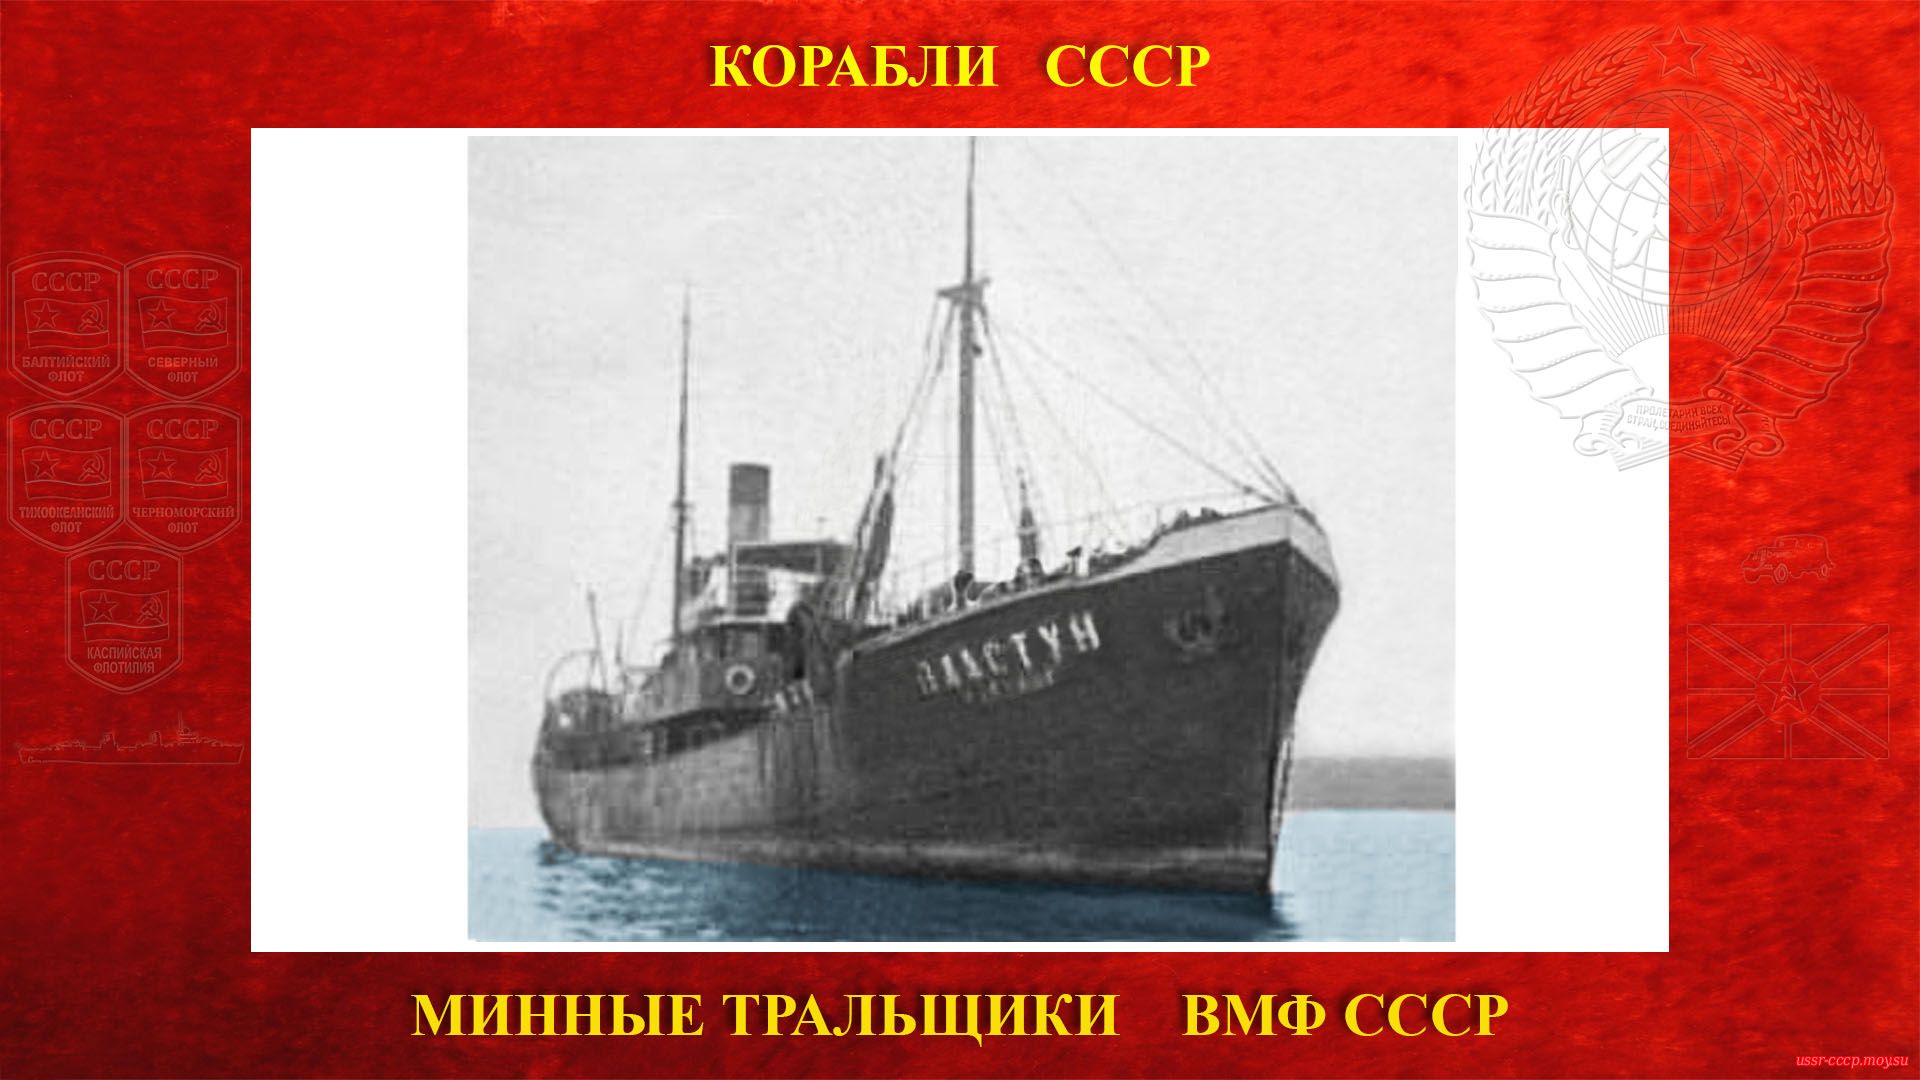 Т-11 (Пластун) — Советский минный тральщик ВМФ СССР